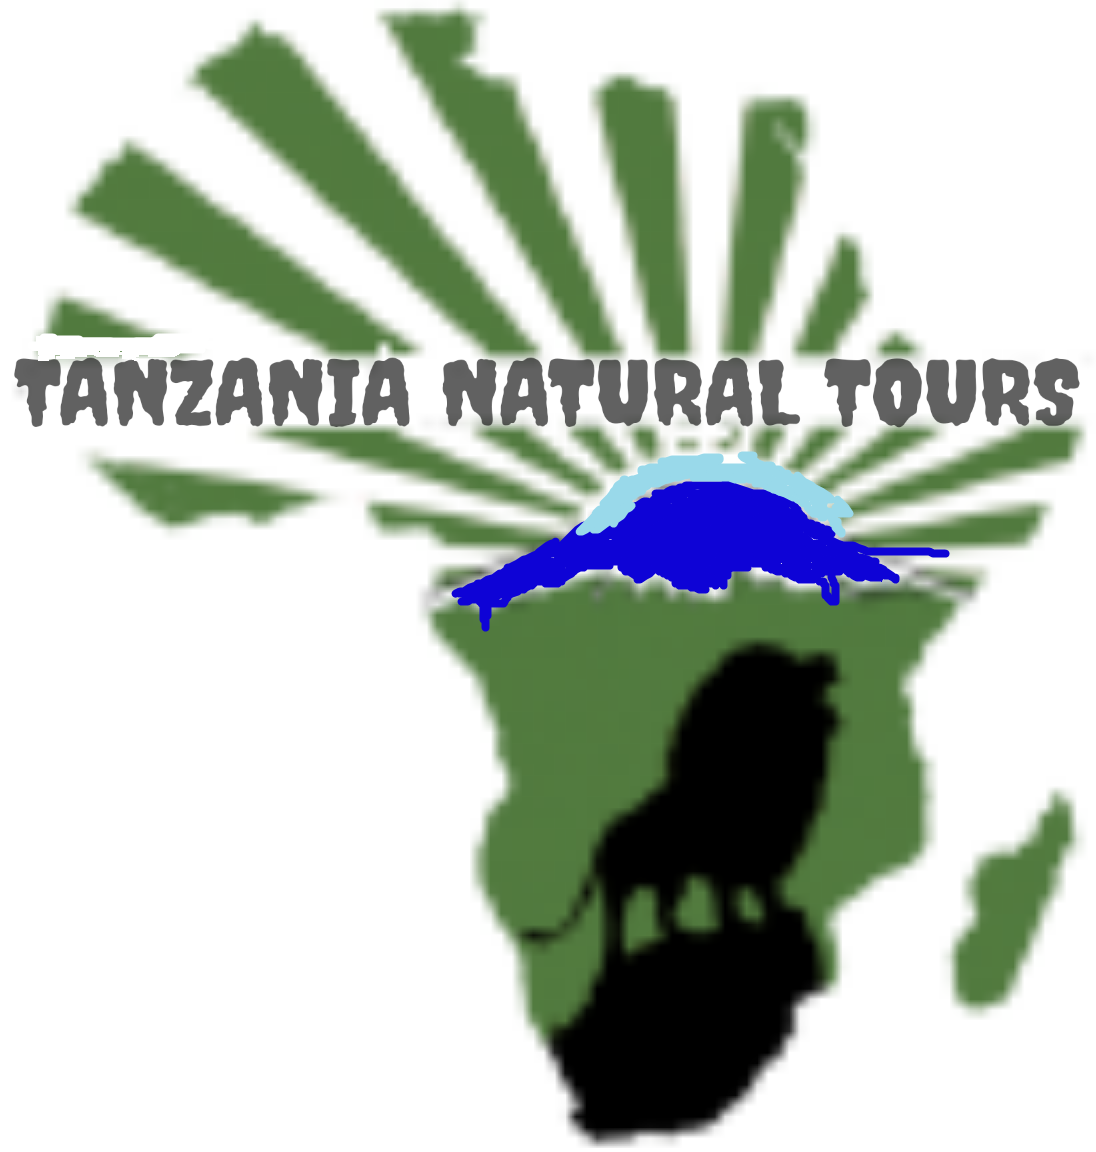 Kilimanjaro marangu route success rate 2022,marangu route 6days &5 affordable price,kilimanajro marangu route huts.